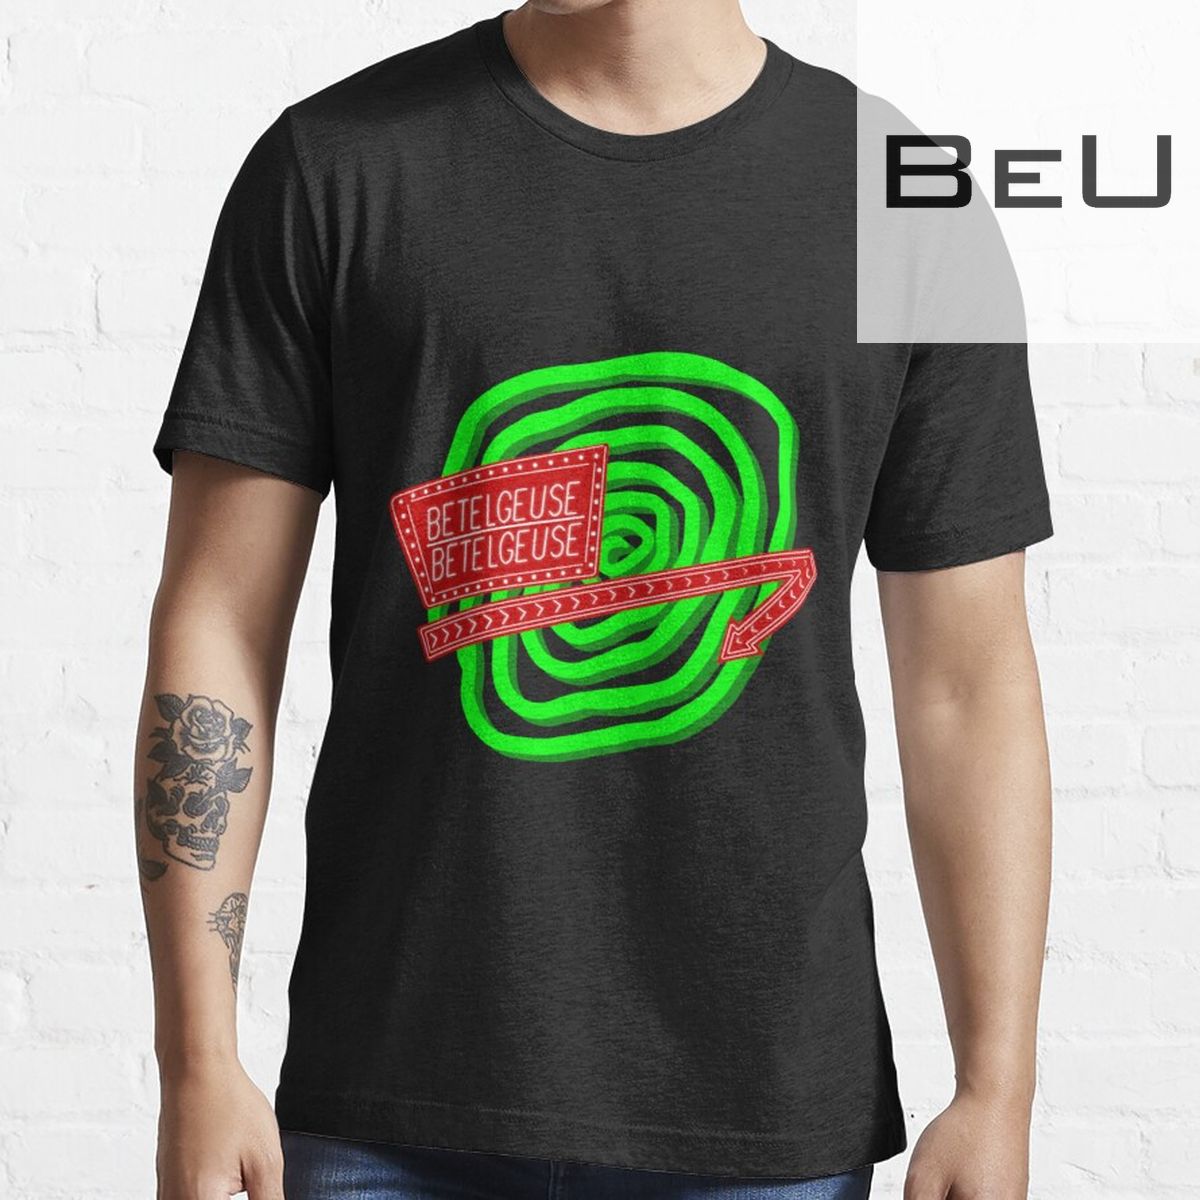 Beetlejuice The Musical T-shirt Tank Top